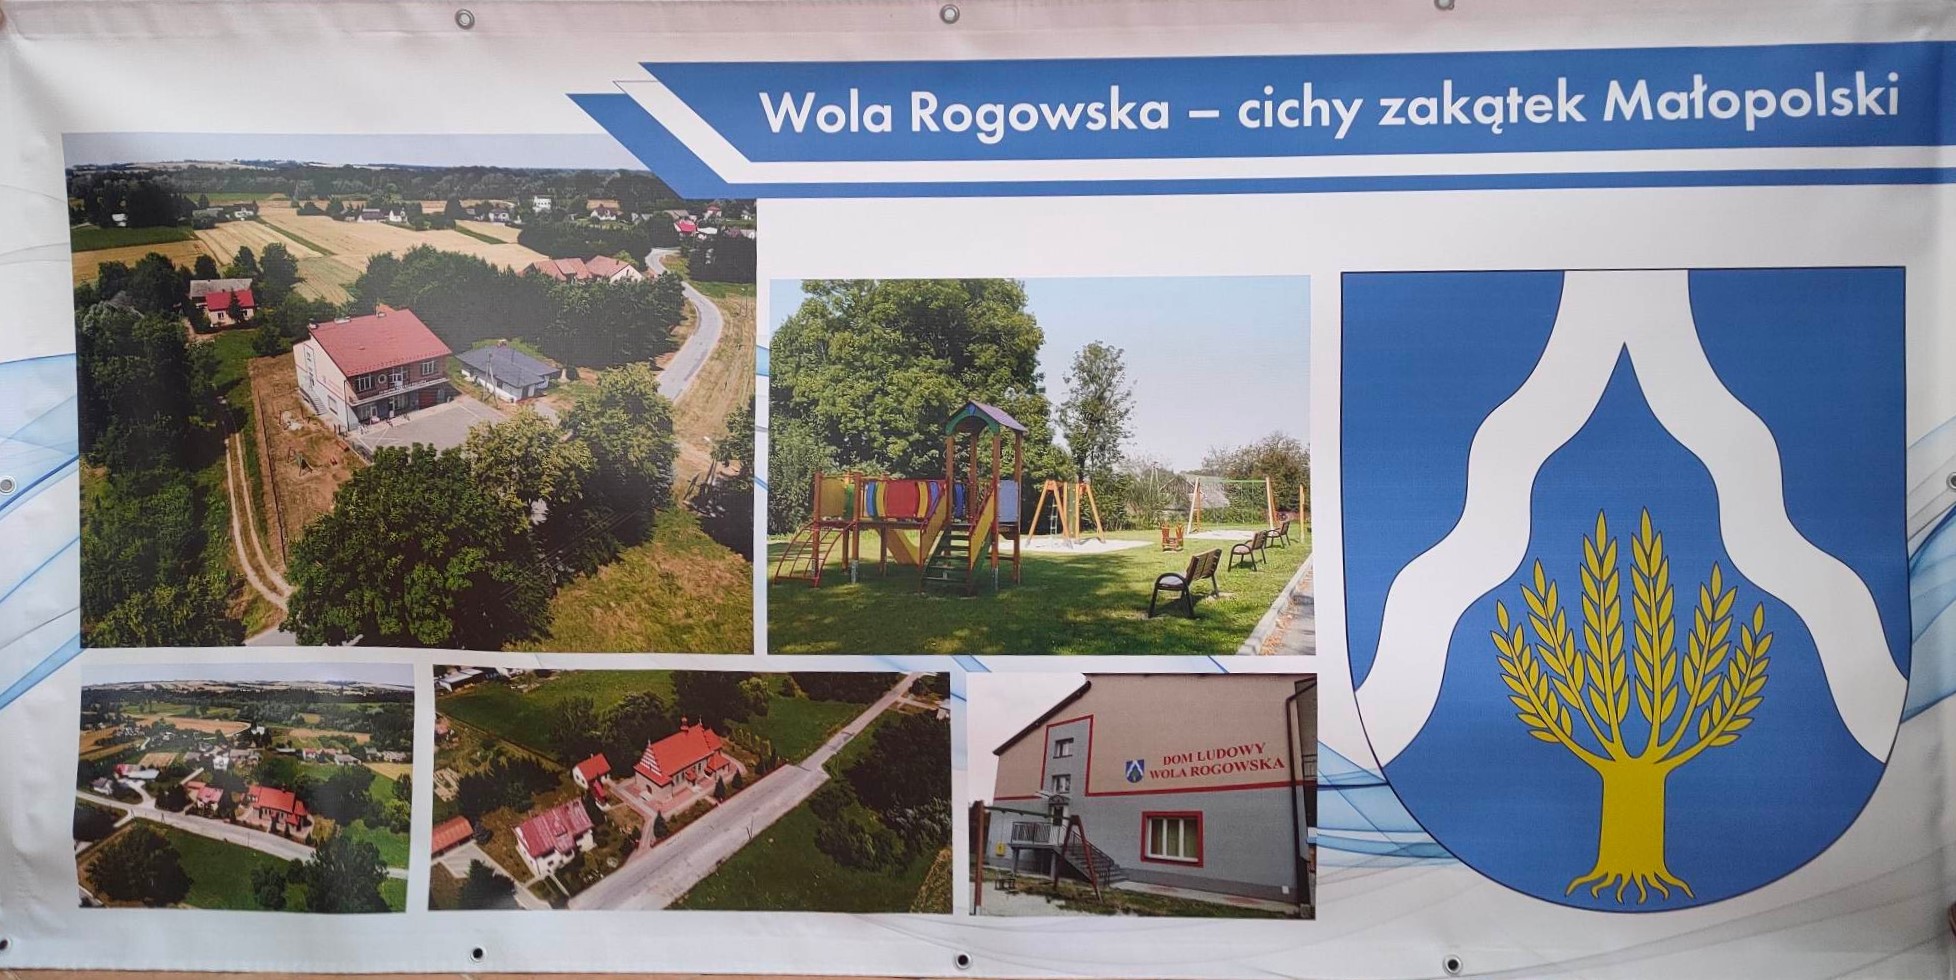 zdjęcie przedstawia baner, na którym widnieją zdjęcia poszczególnych miejsc w miejscowości Wola Rogowska z prawej strony baneru widnieje herb gminy Wietrzychowowice